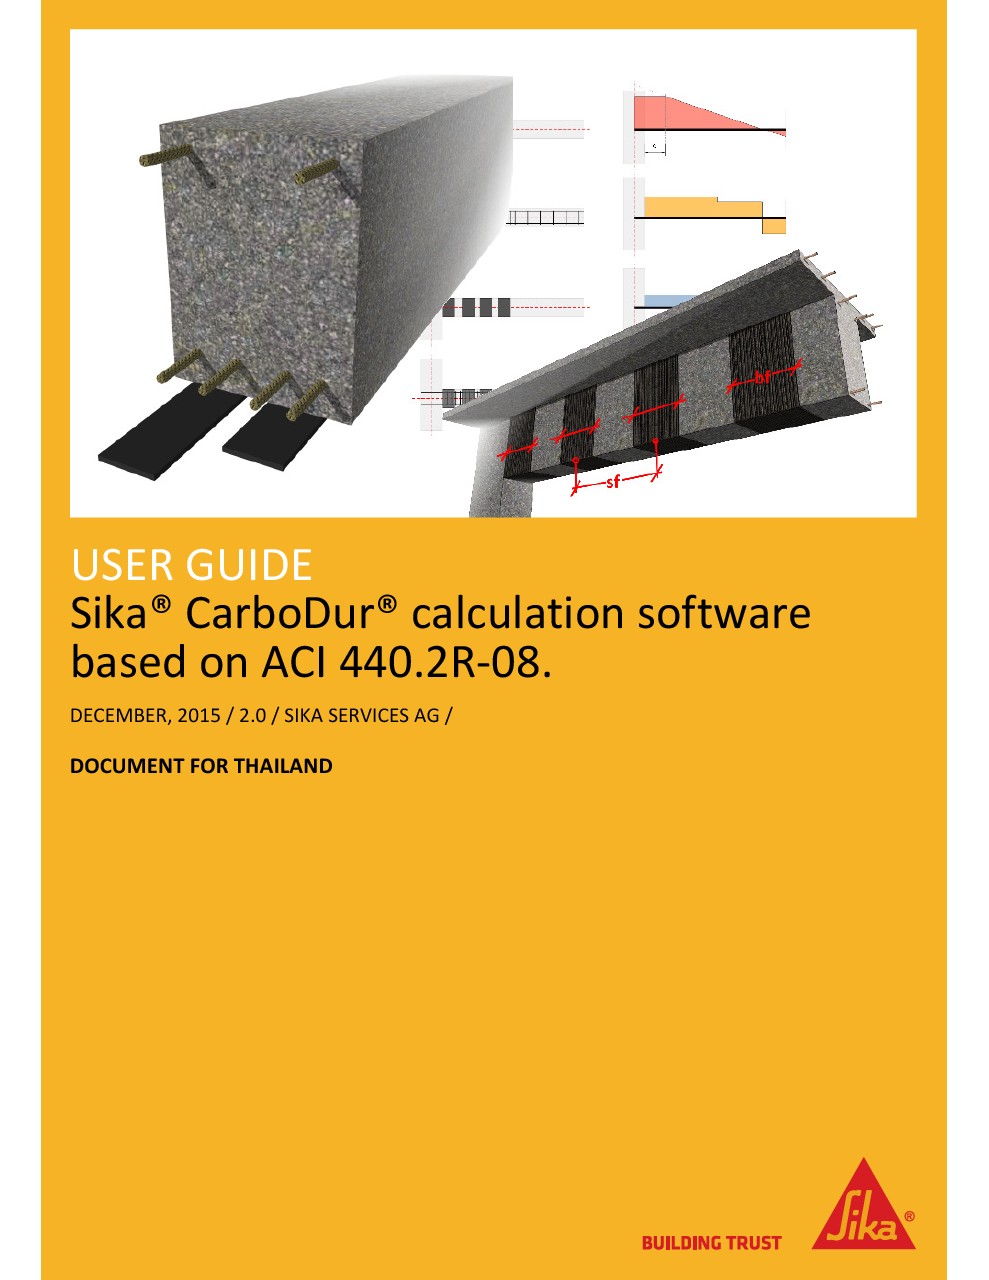 คู่มือการใช้ซอฟต์แวร์ Sika Carbodur